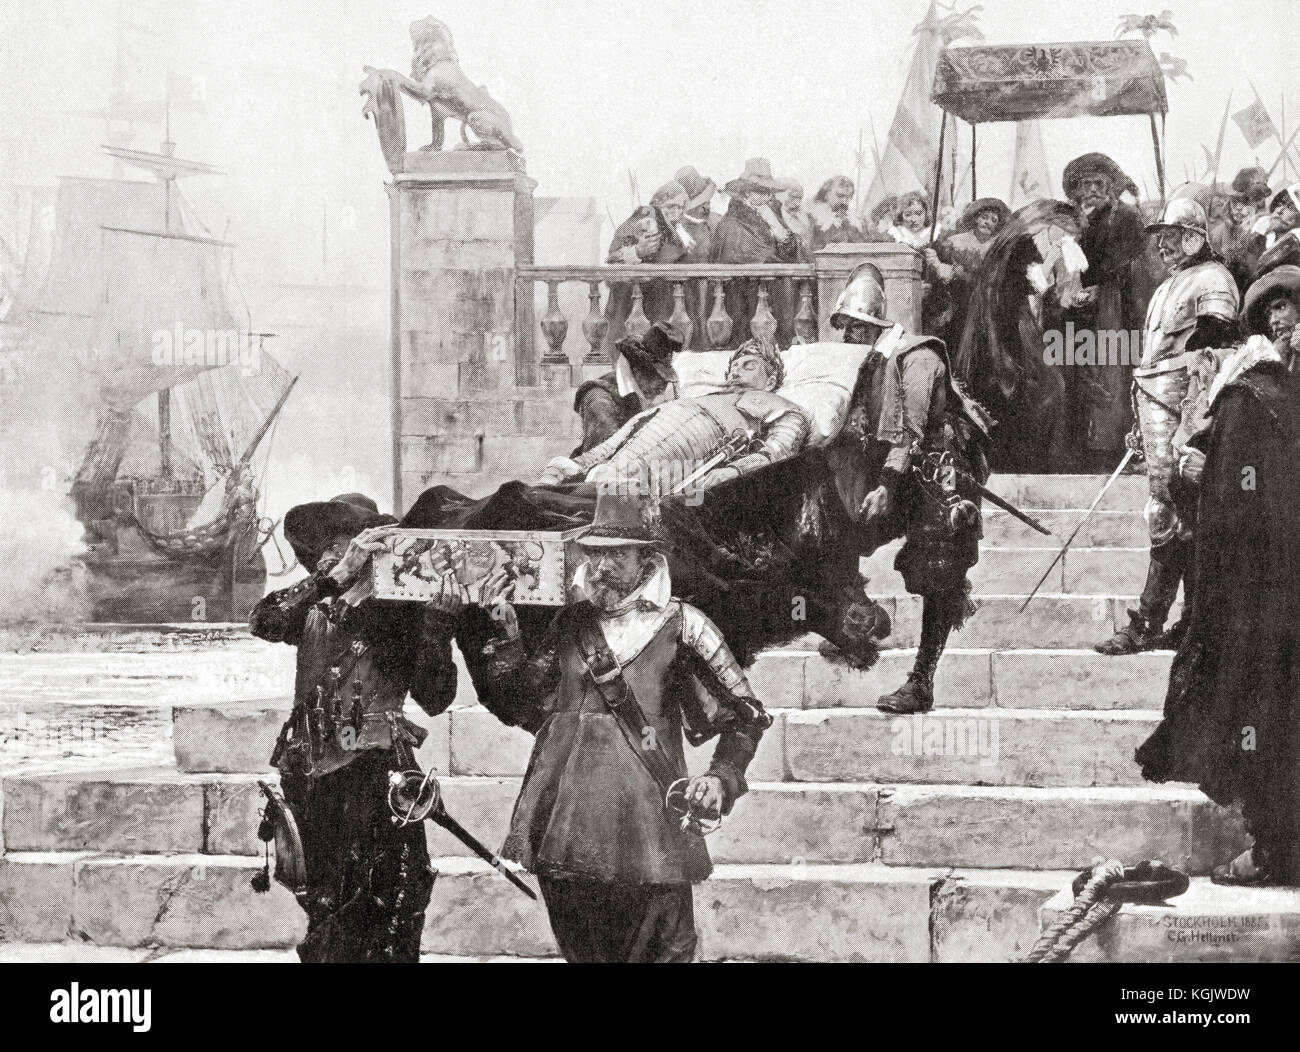 Transporter le corps de Gustavus Adolphus au navire de Wolgast pour le transfert en Suède après sa mort à la bataille de Lützen, le 6 novembre 1632. Gustav II Adolf, 1594 – 1632, alias Gustavus Adolphus ou Gustav II Adolph. Roi de Suède de 1611 à 1632. De l'Histoire des Nations de Hutchinson, publié en 1915. Banque D'Images